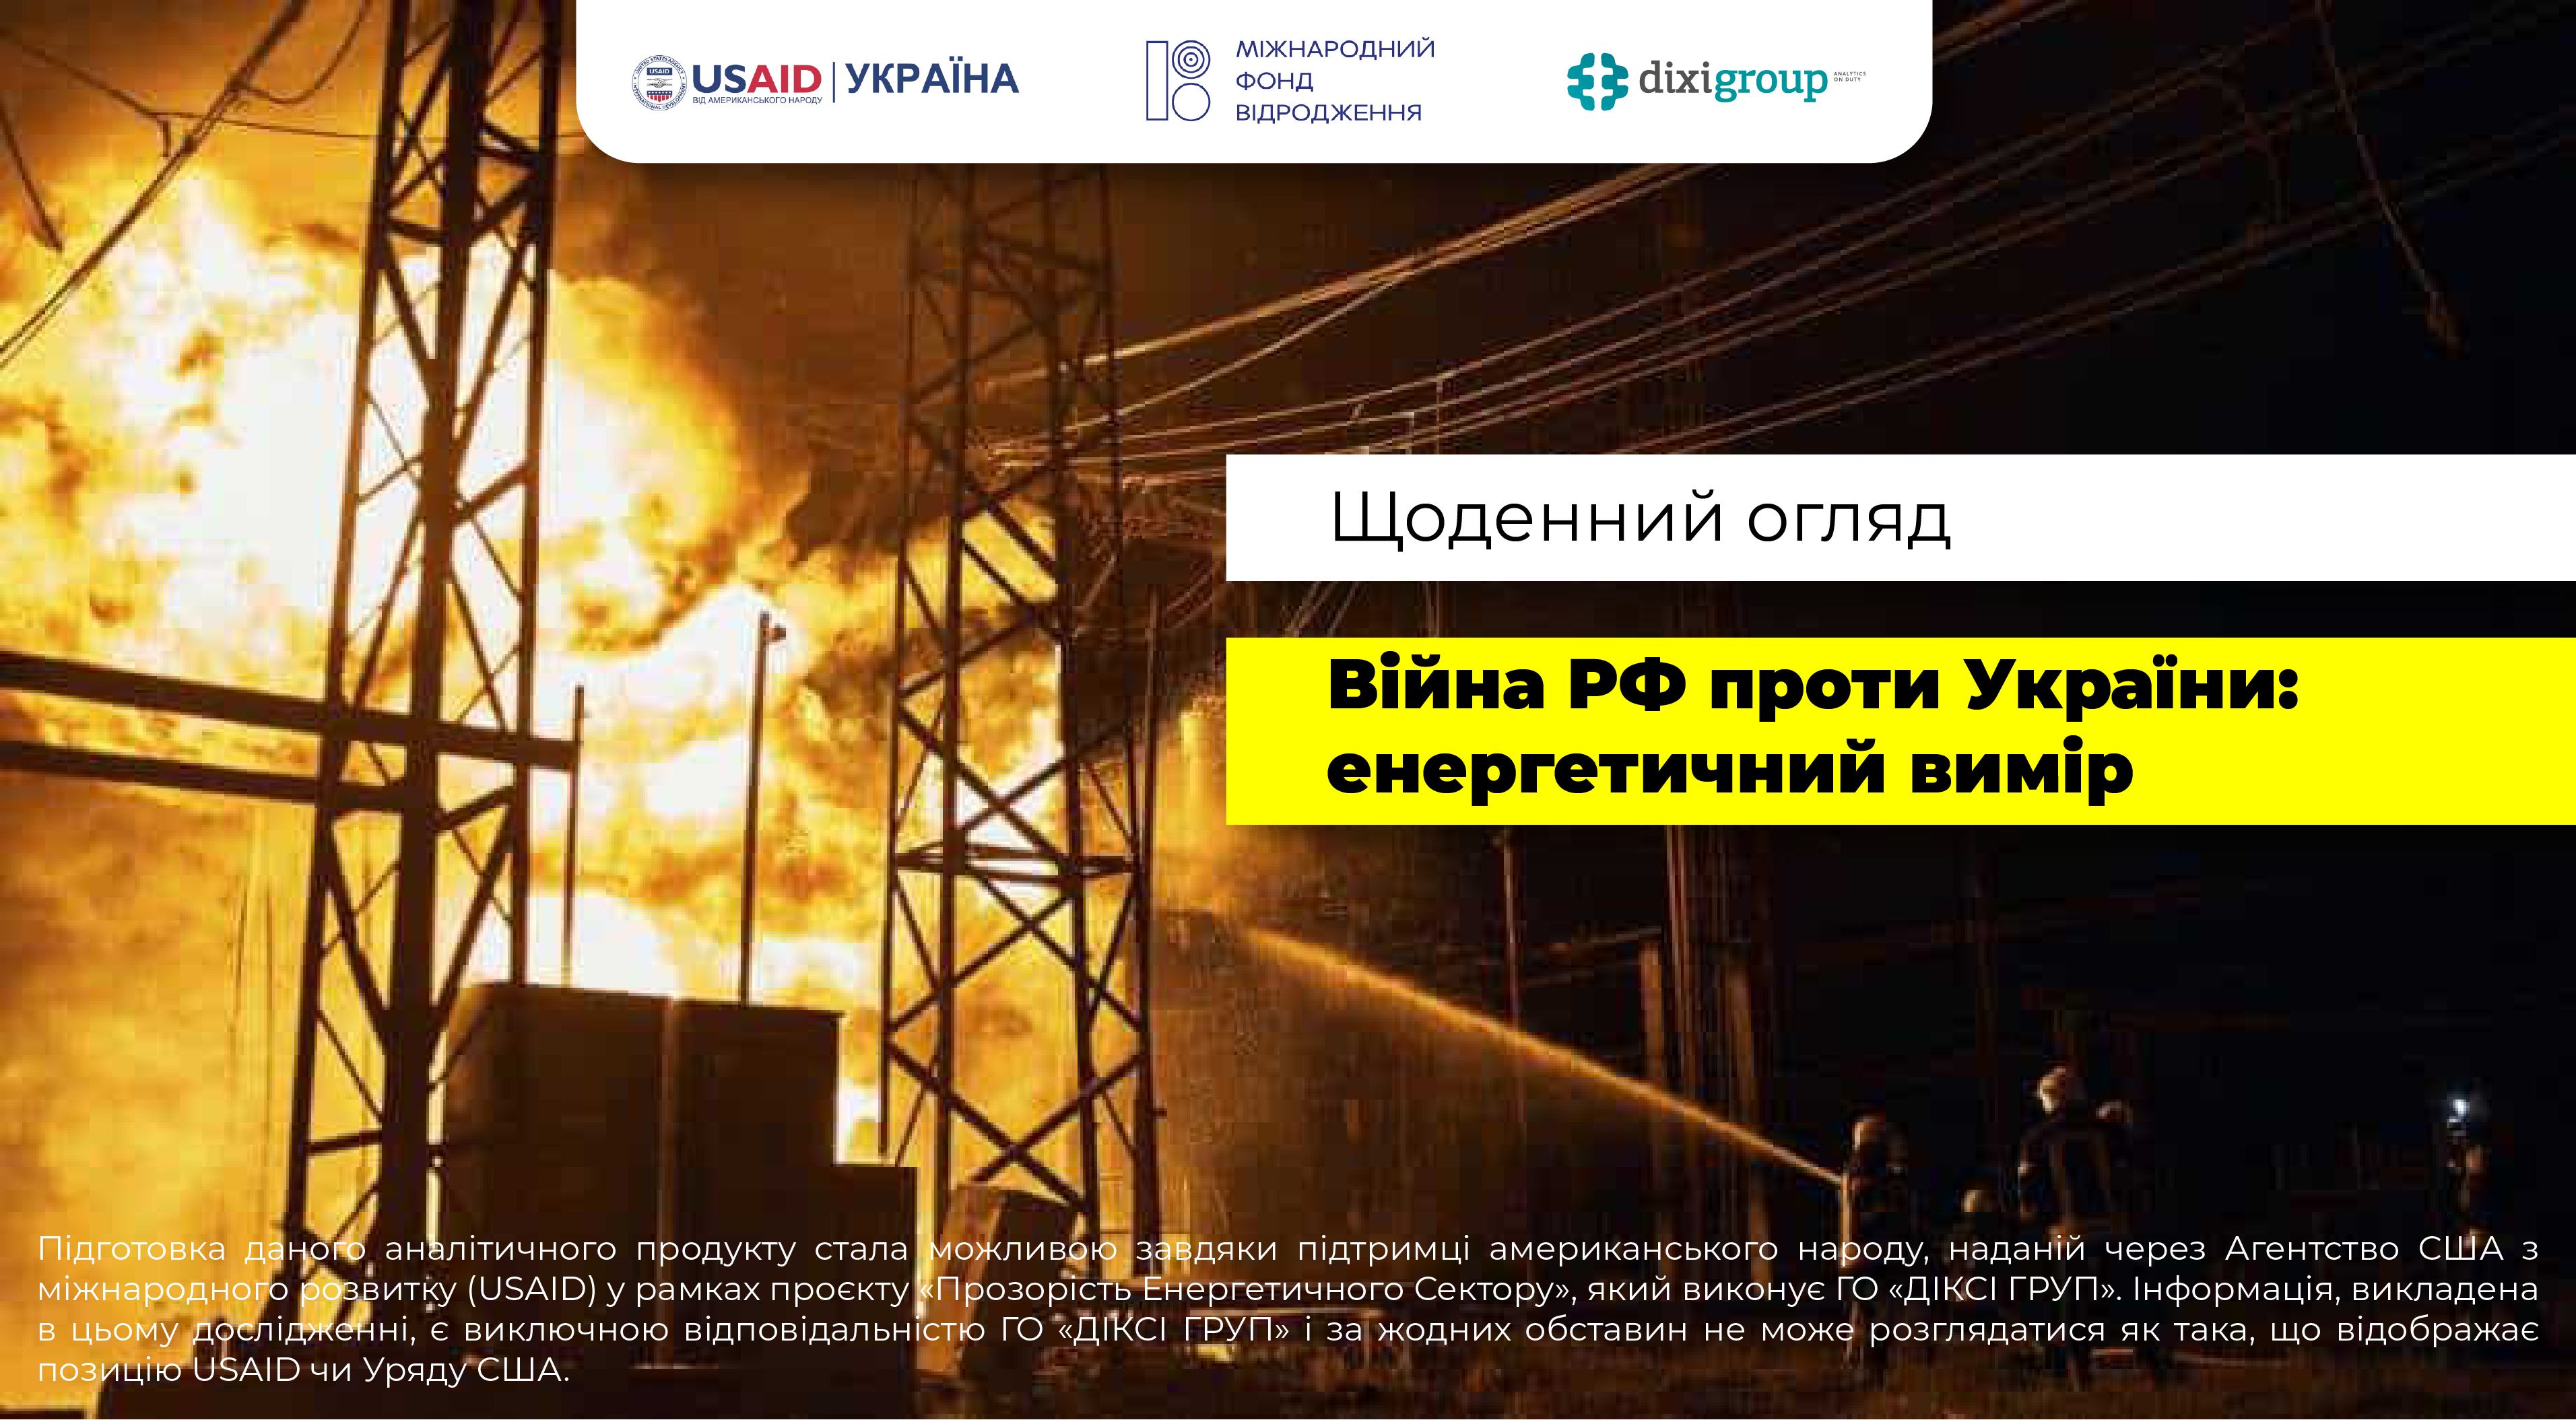 Війна росії проти України: енергетичний вимір (DiXi Group alert) – 20 березня